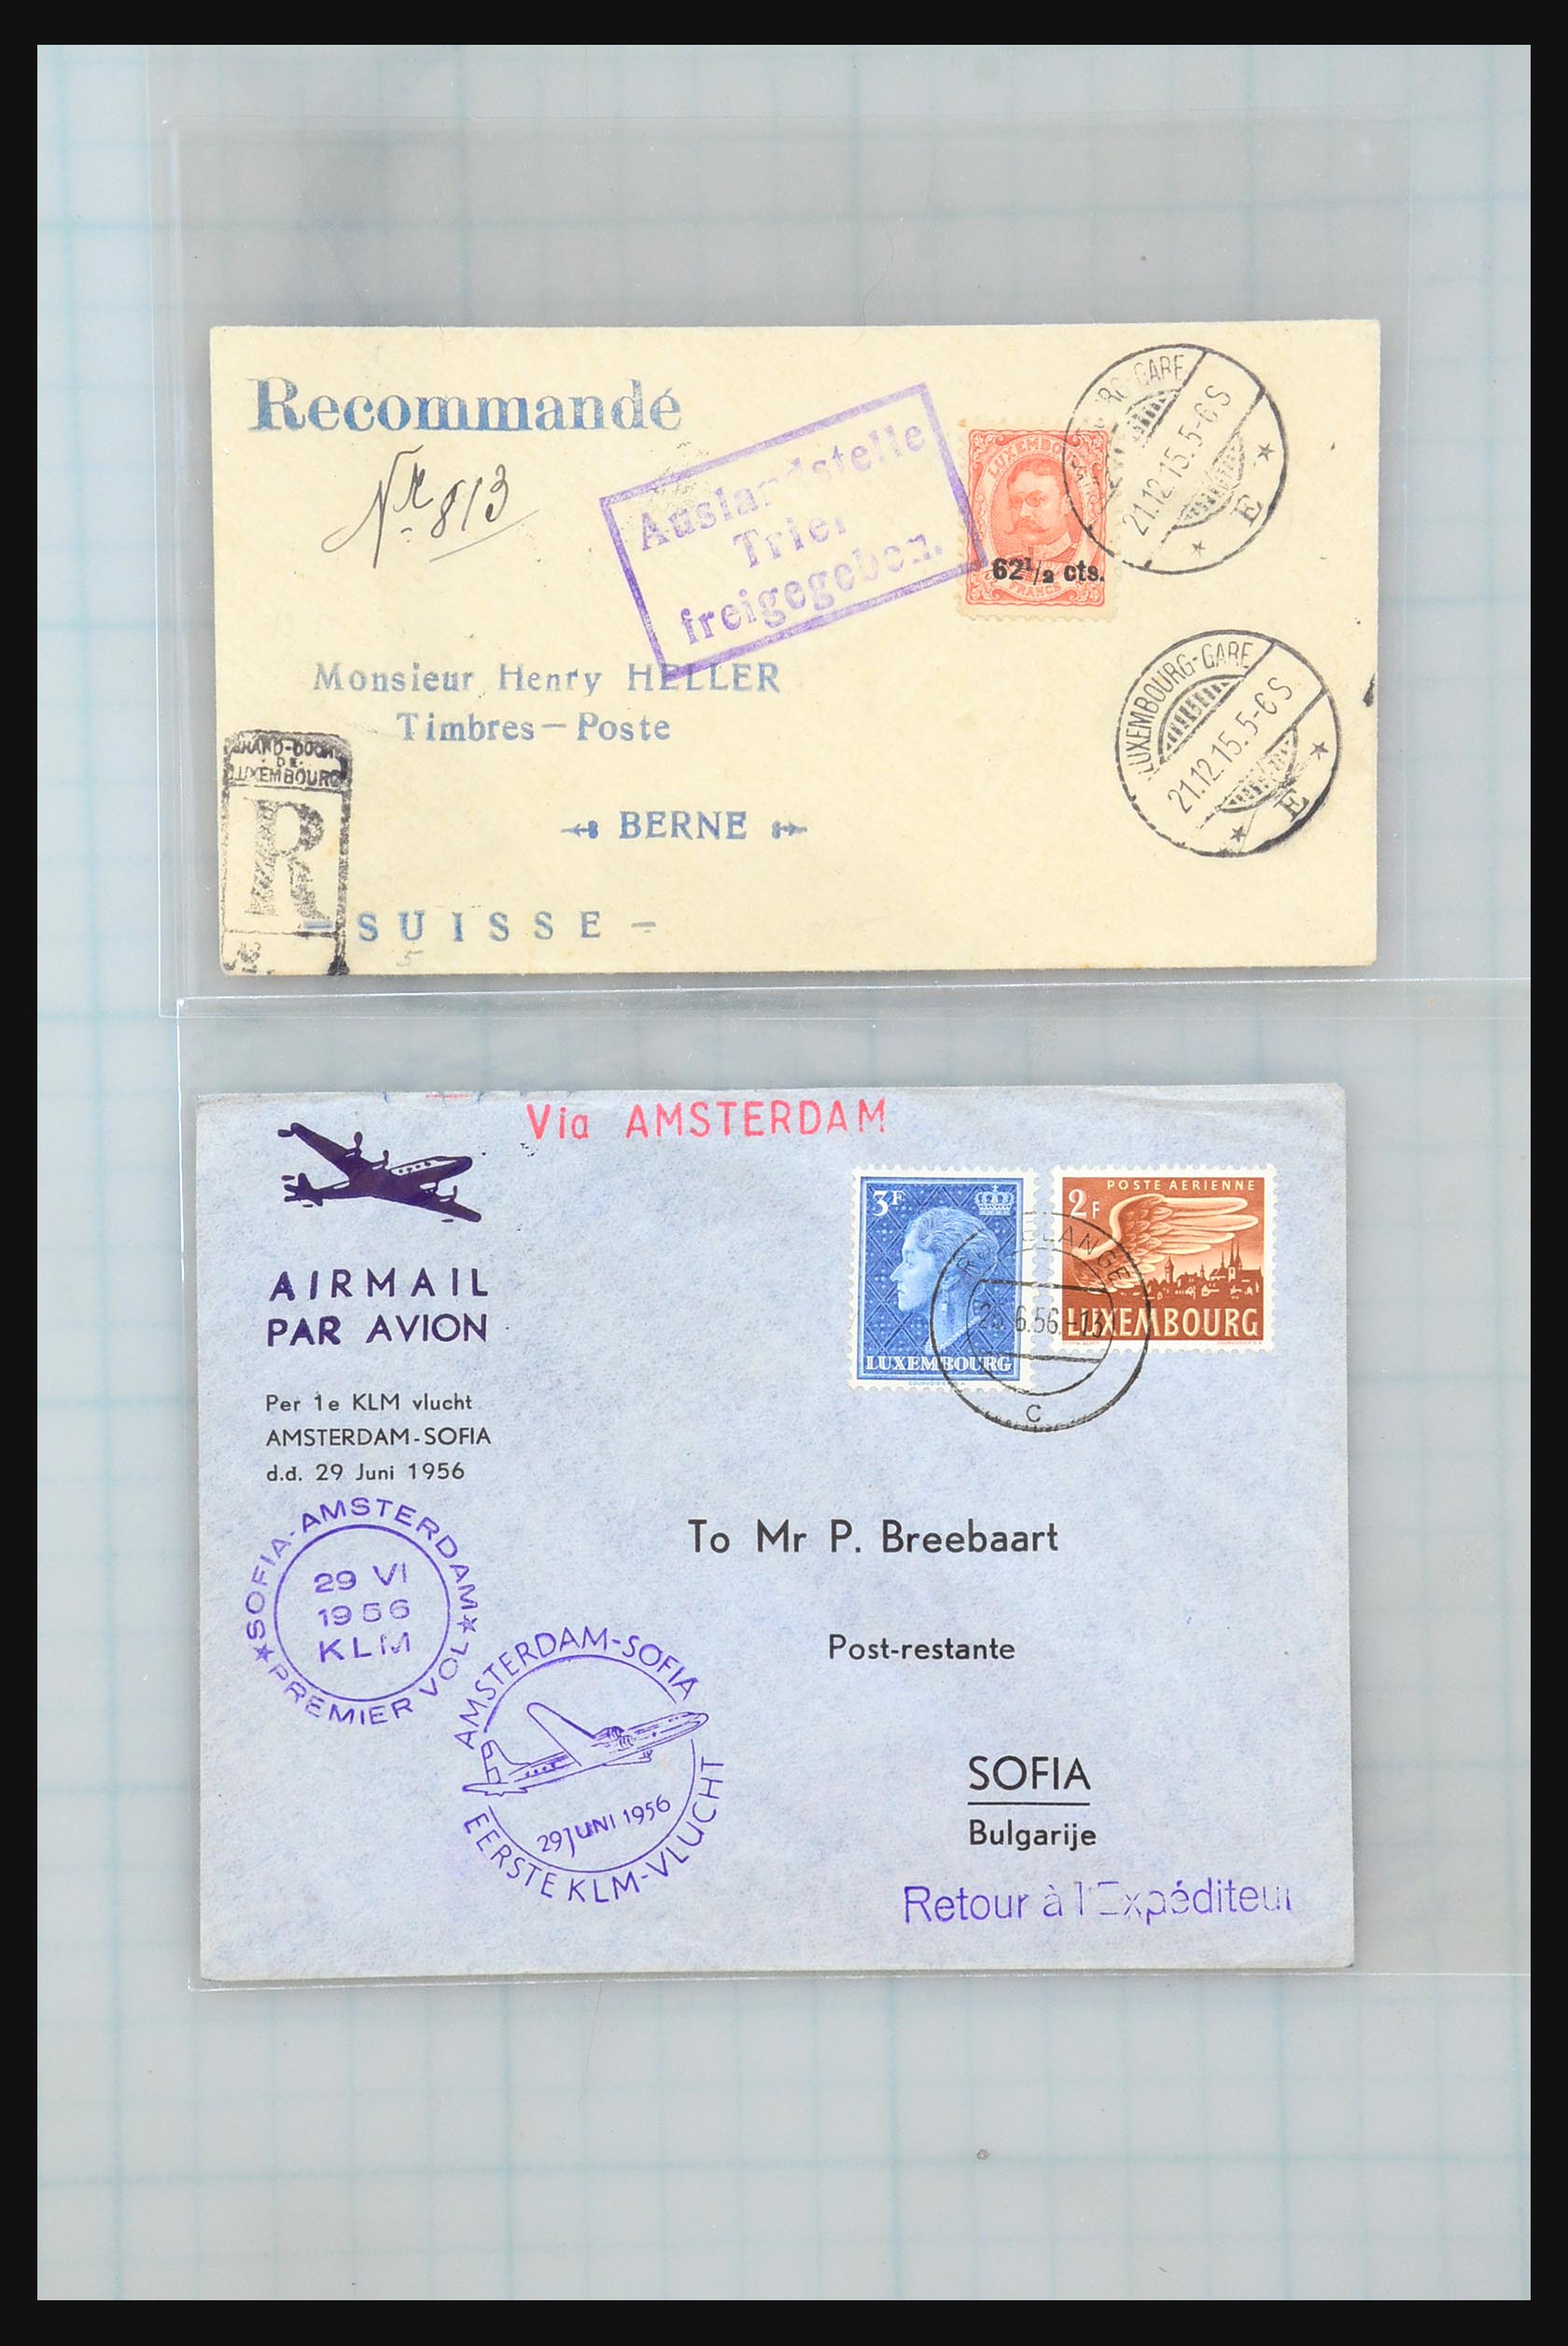 31358 074 - 31358 Portugal/Luxemburg/Griekenland brieven 1880-1960.